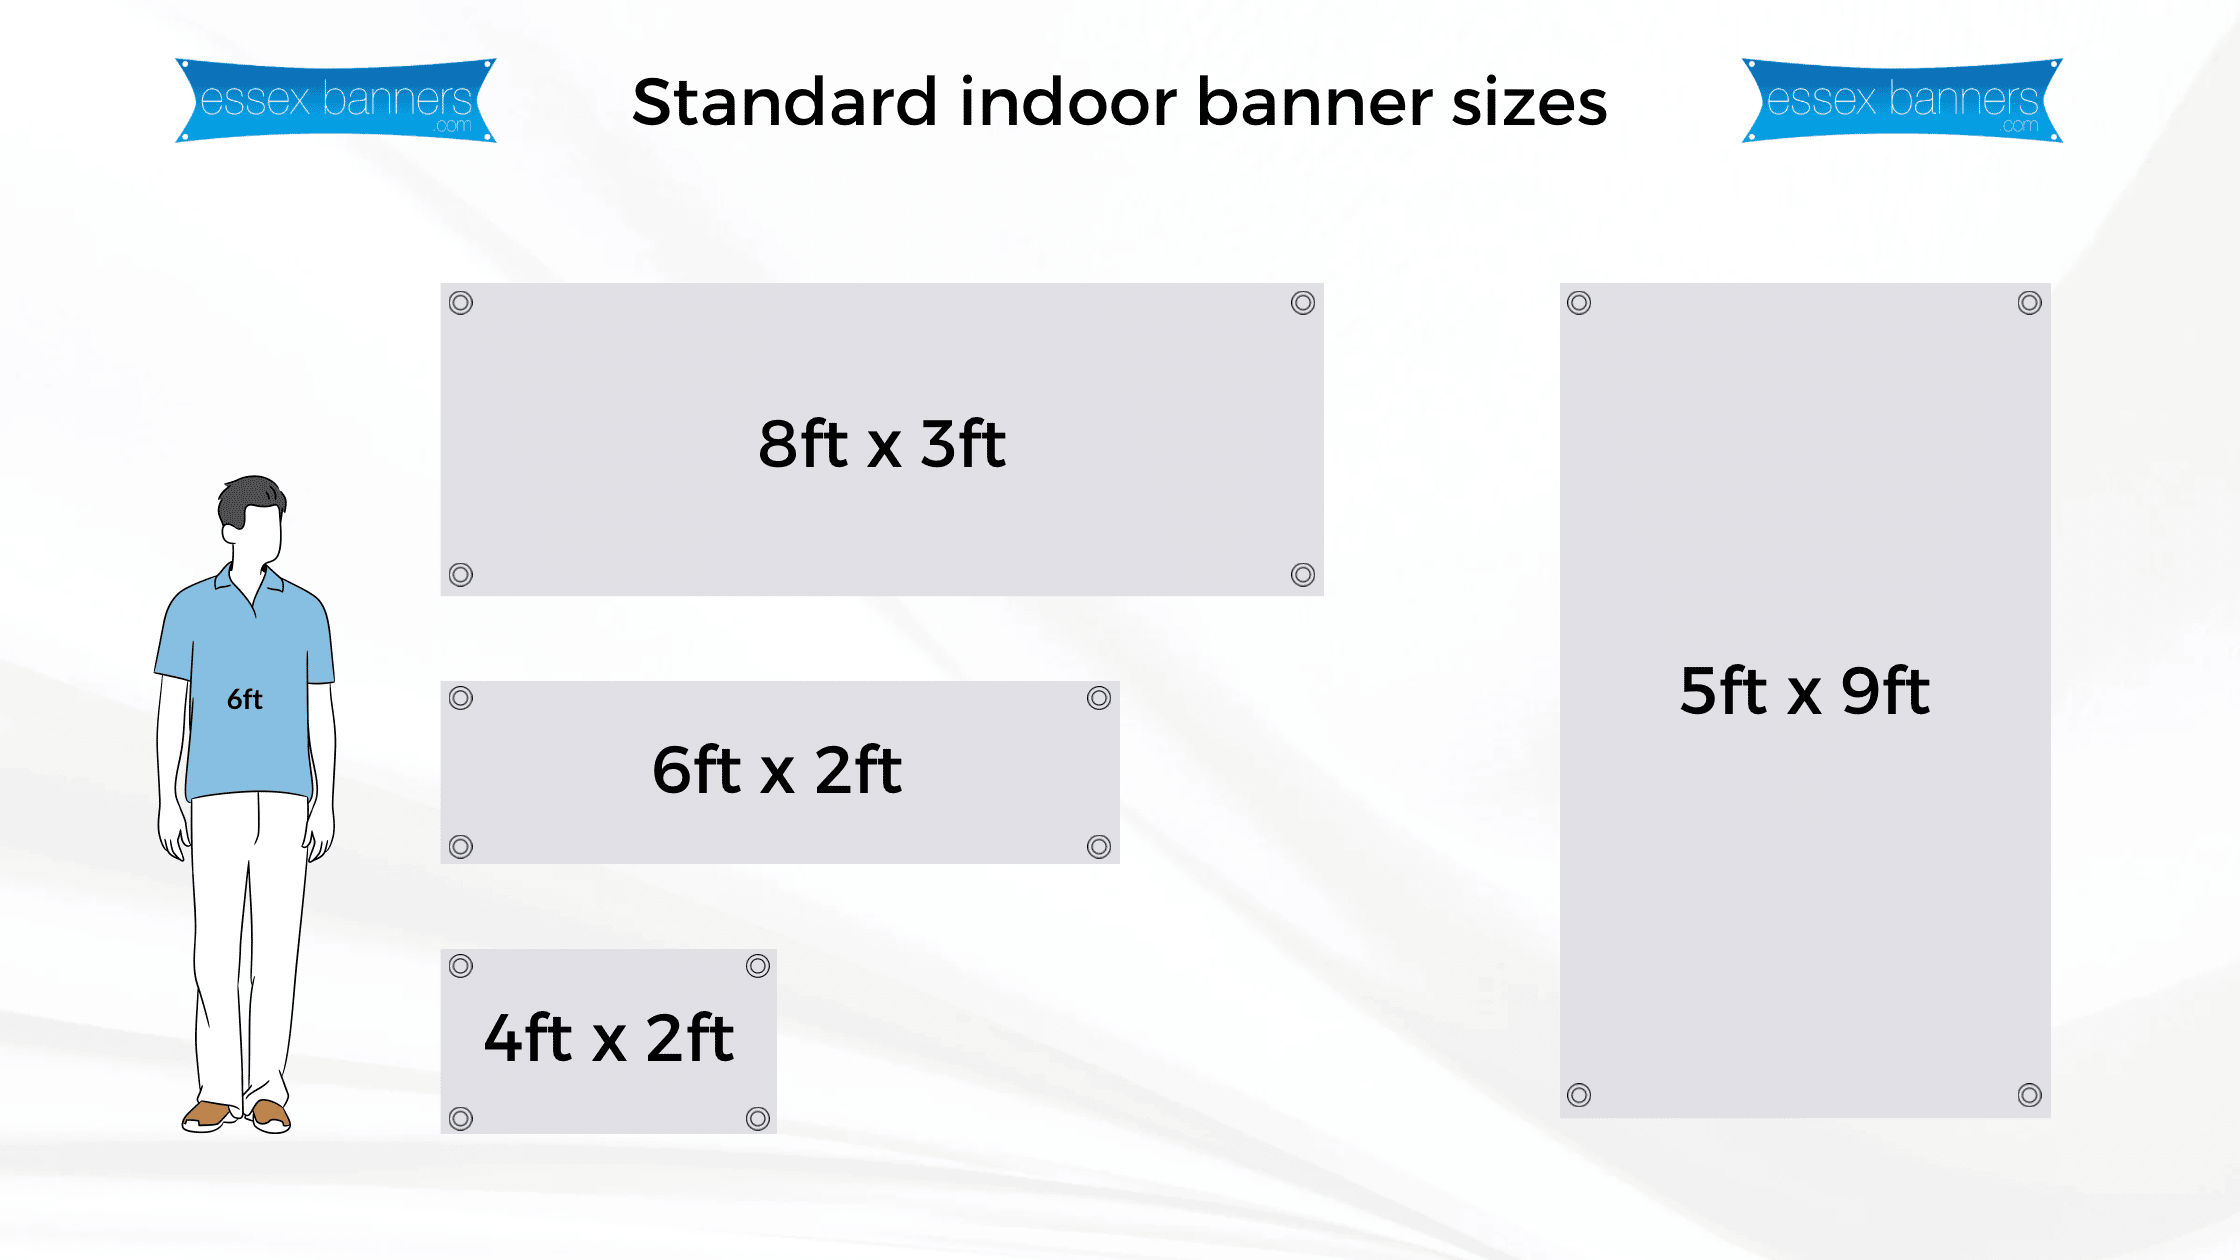 Standard indoor banner sizes